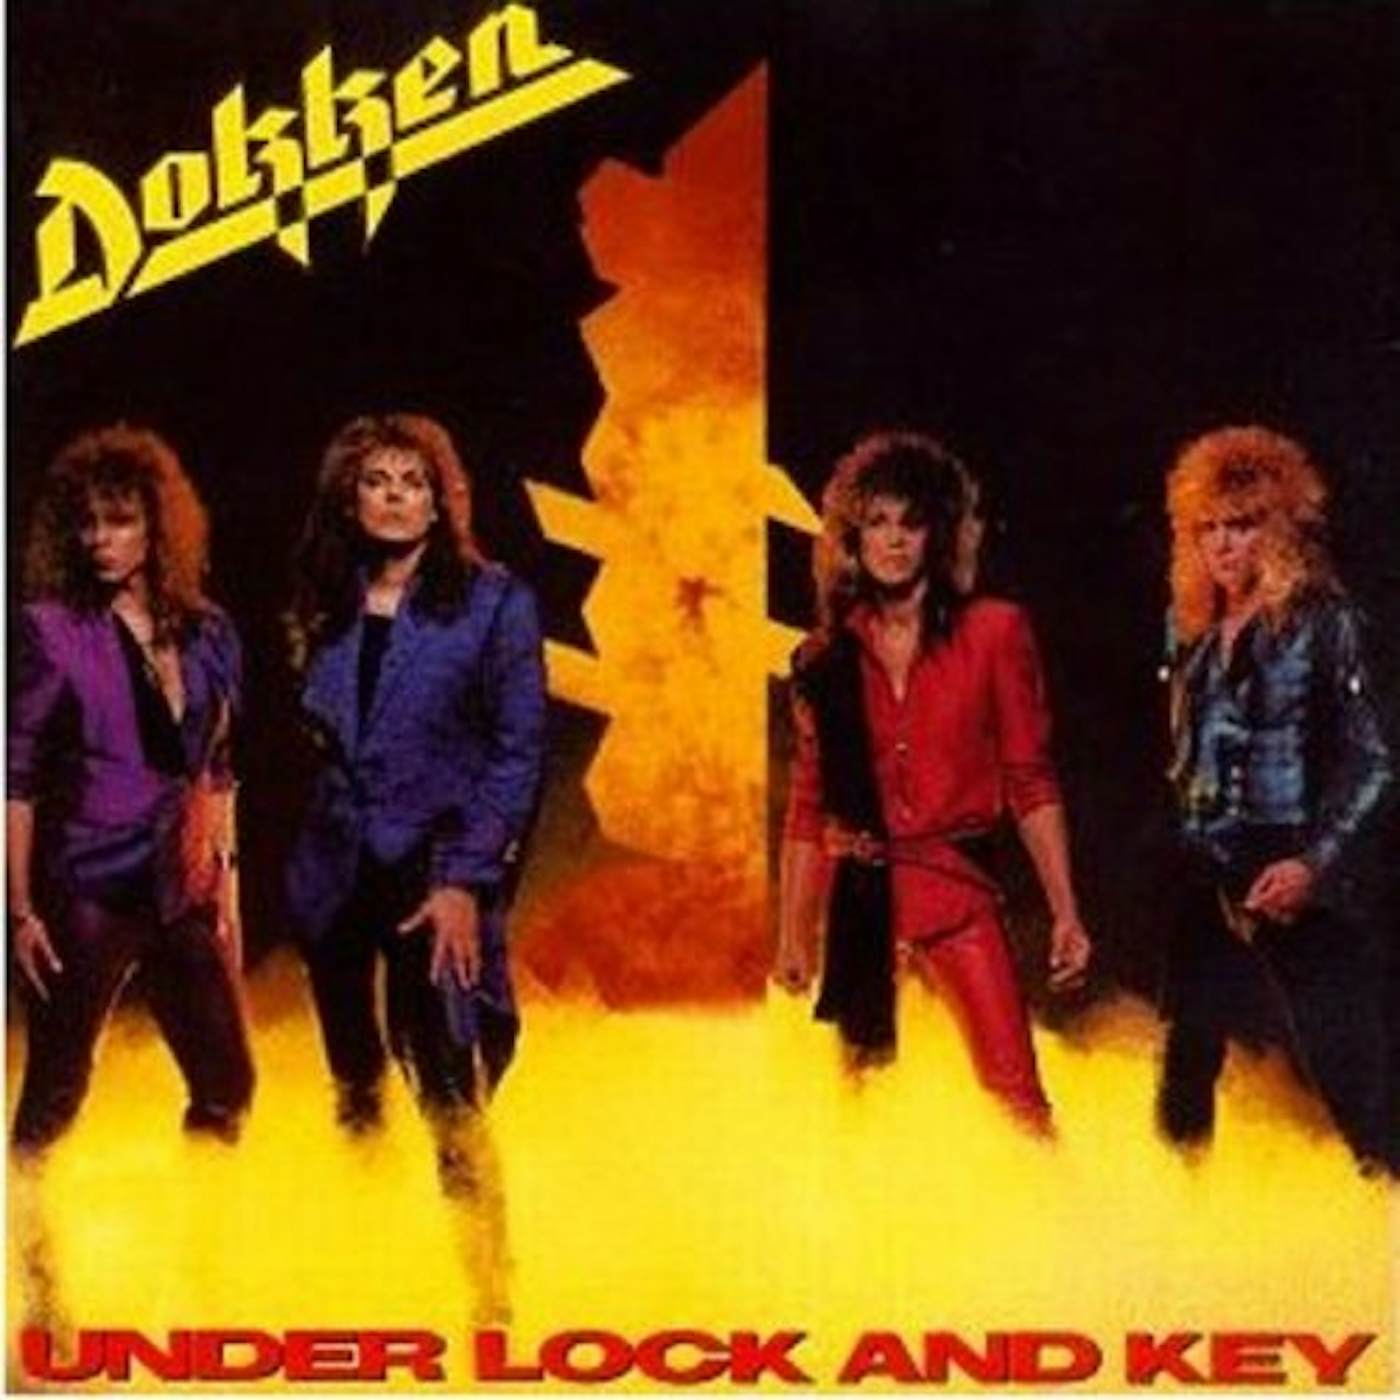 Dokken UNDER LOCK & KEY CD